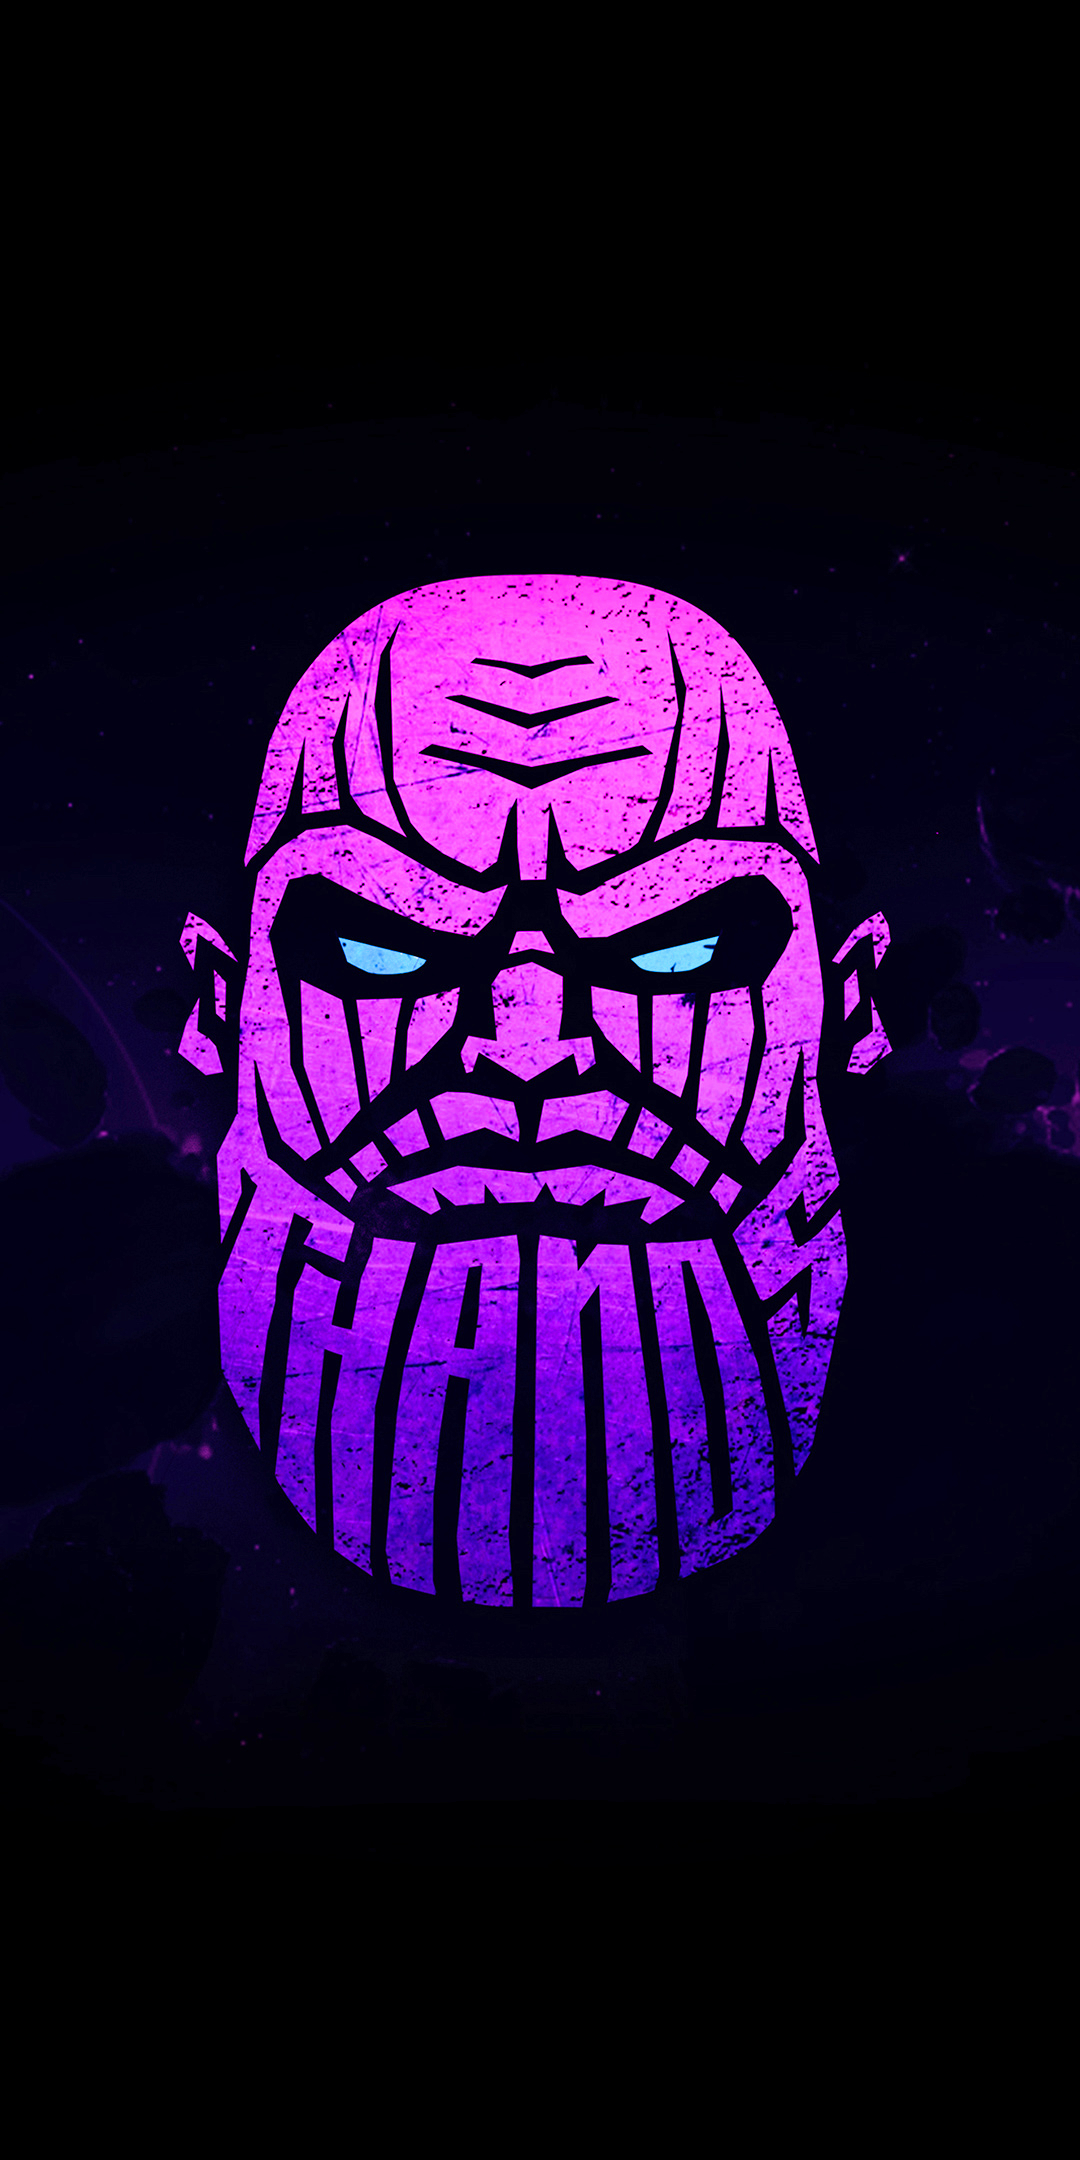 Descarga gratuita de fondo de pantalla para móvil de Historietas, Thanos.